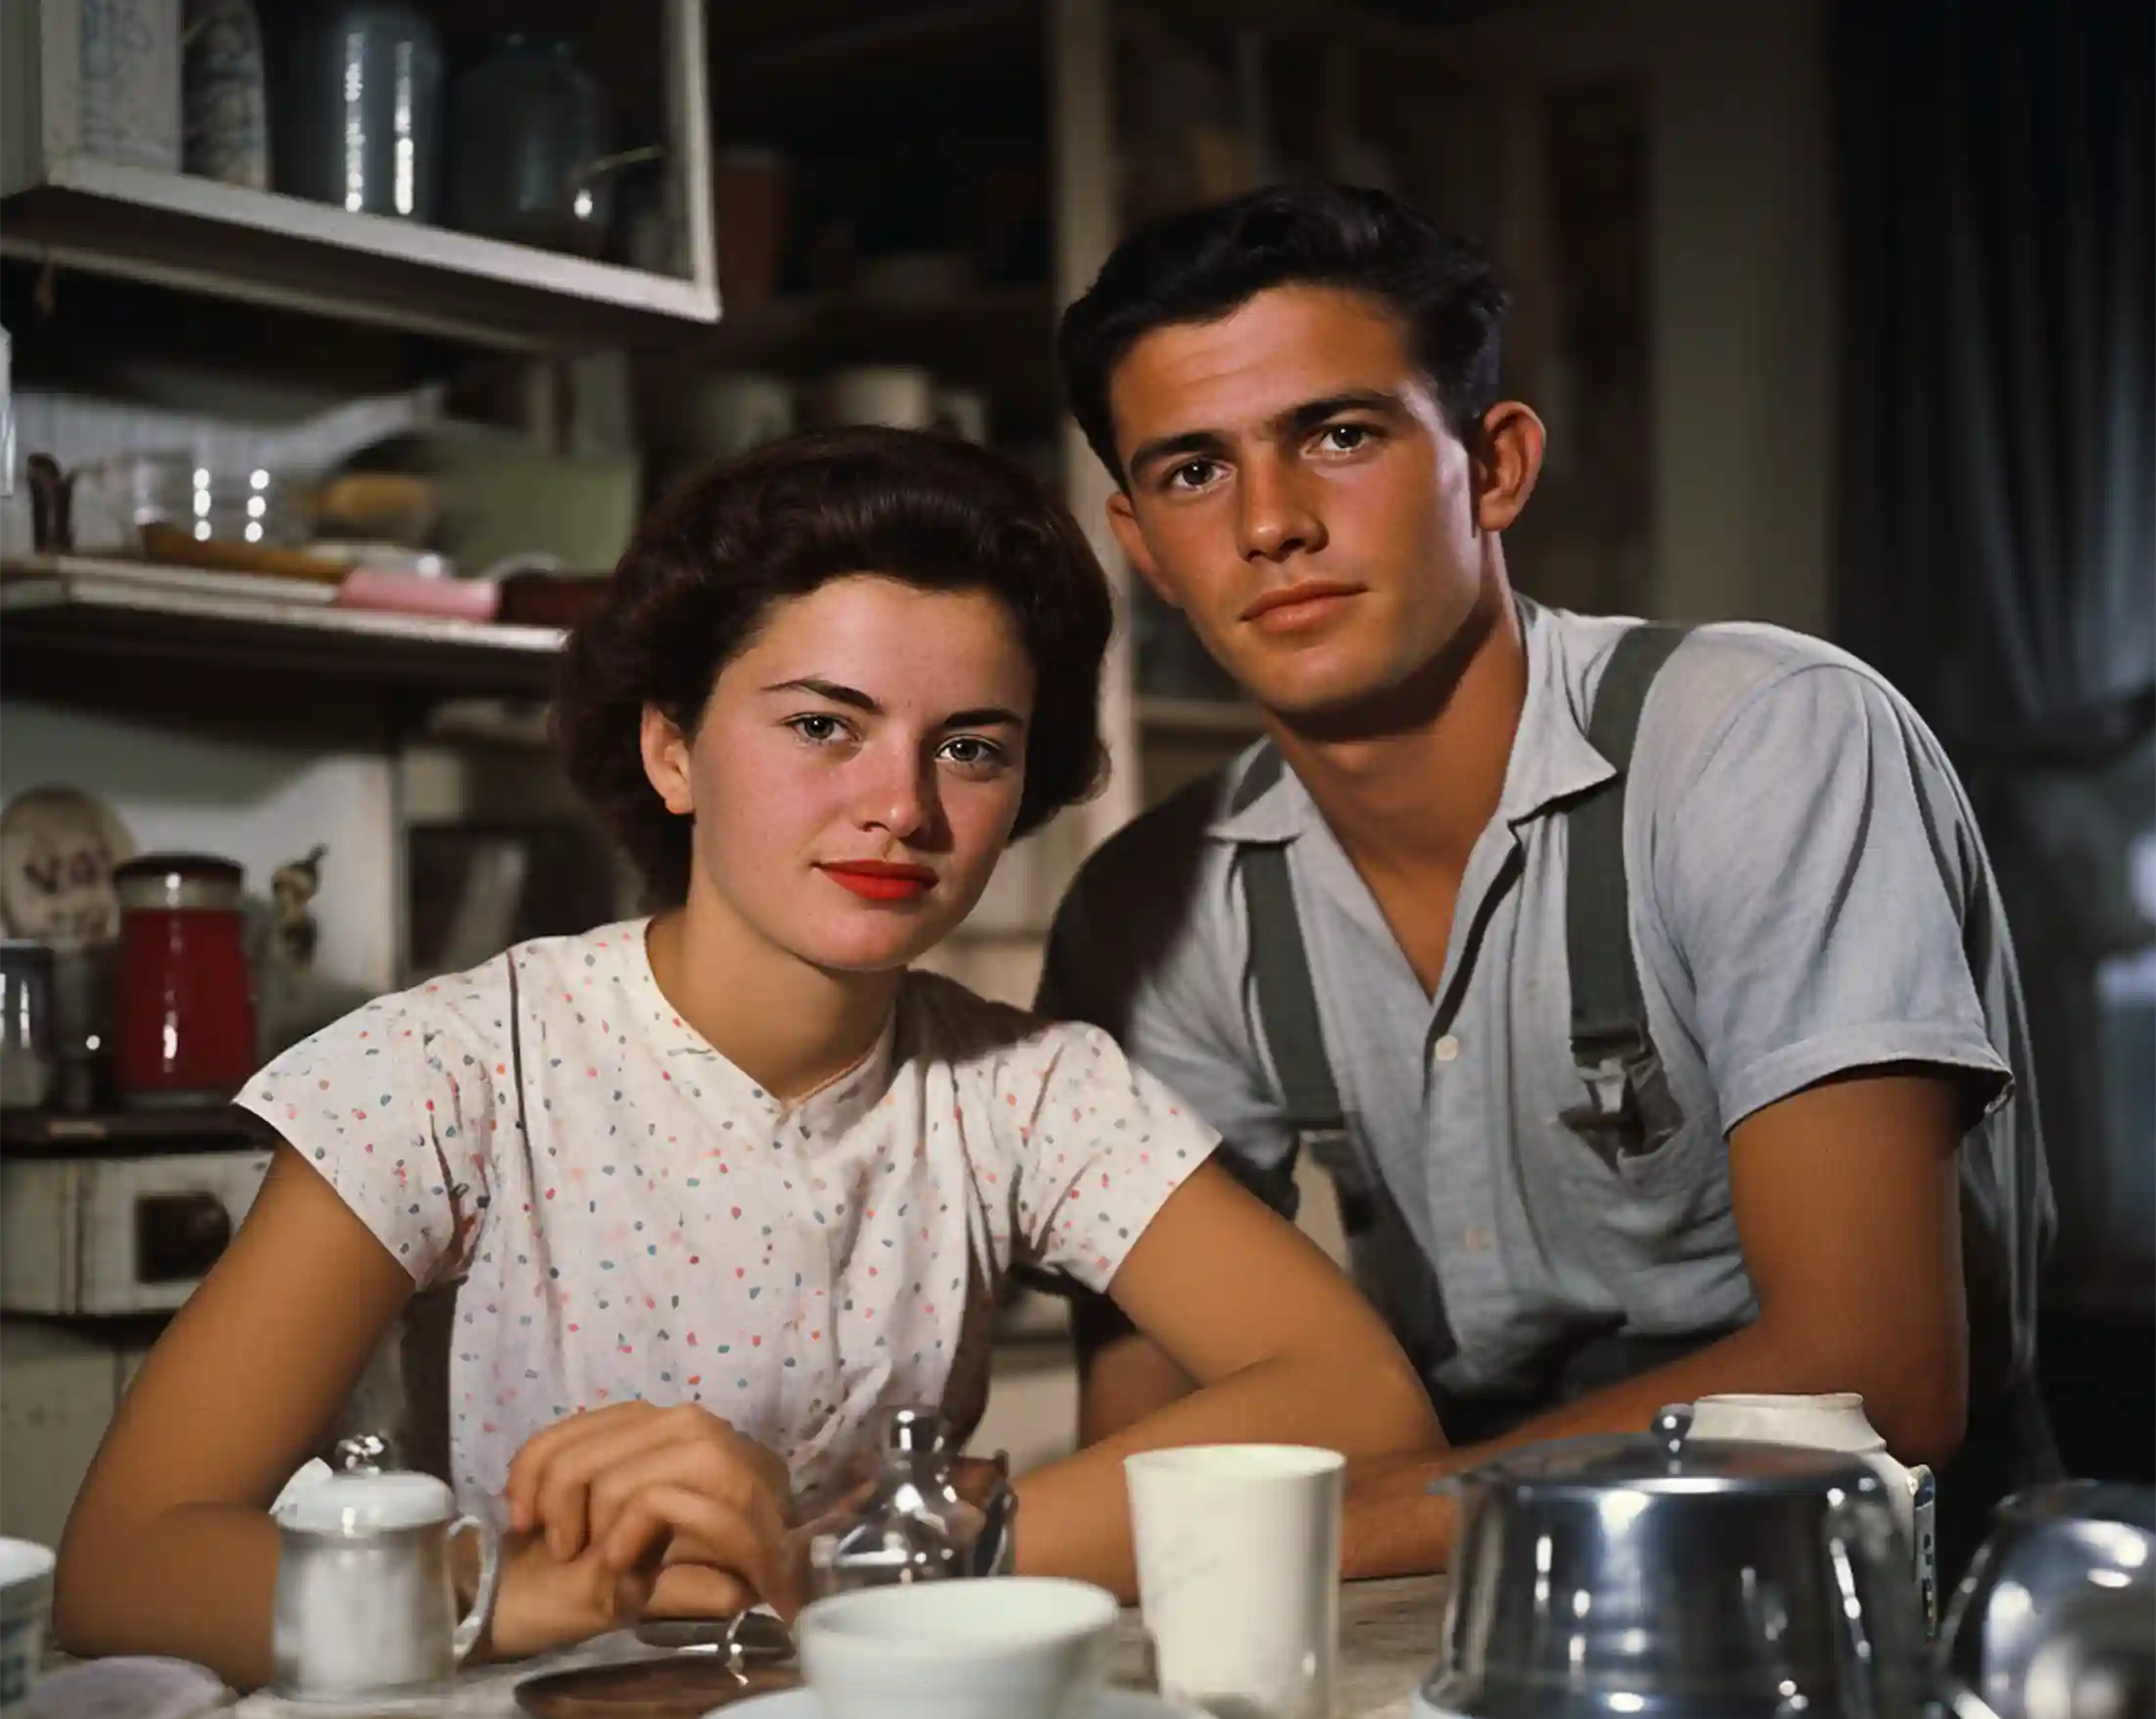 Junges Paar, USA in 50er-Jahre vor Kaffeekanne mit Filterkaffee und Tassen und Kaffeefilter, Handfilter und im Hintergrund Kaffeekaraffe